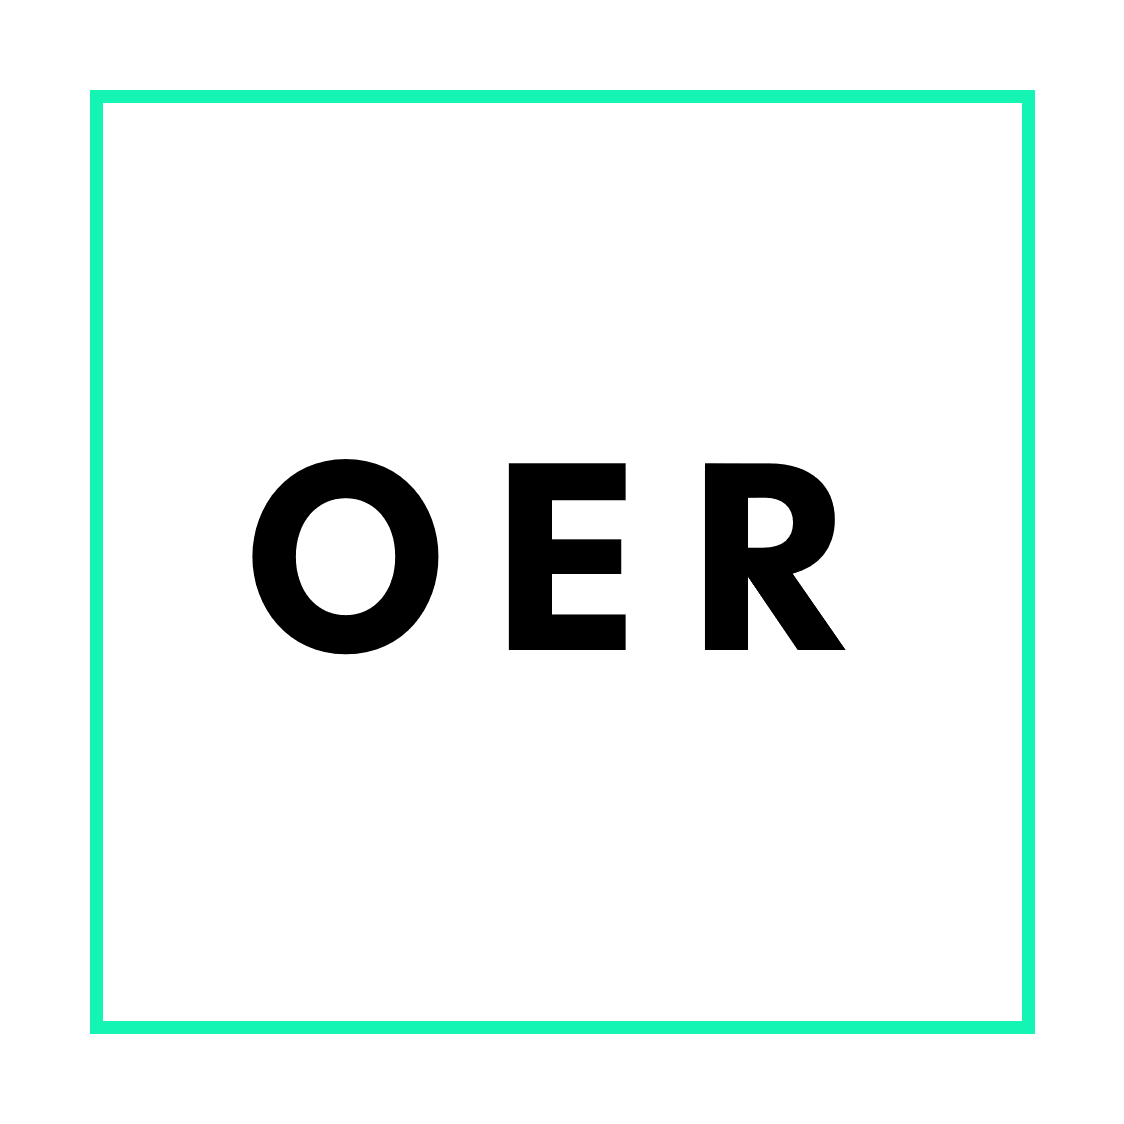 Grafik zu Open Educational Resources bestehend aus den Buchstaben "OER"